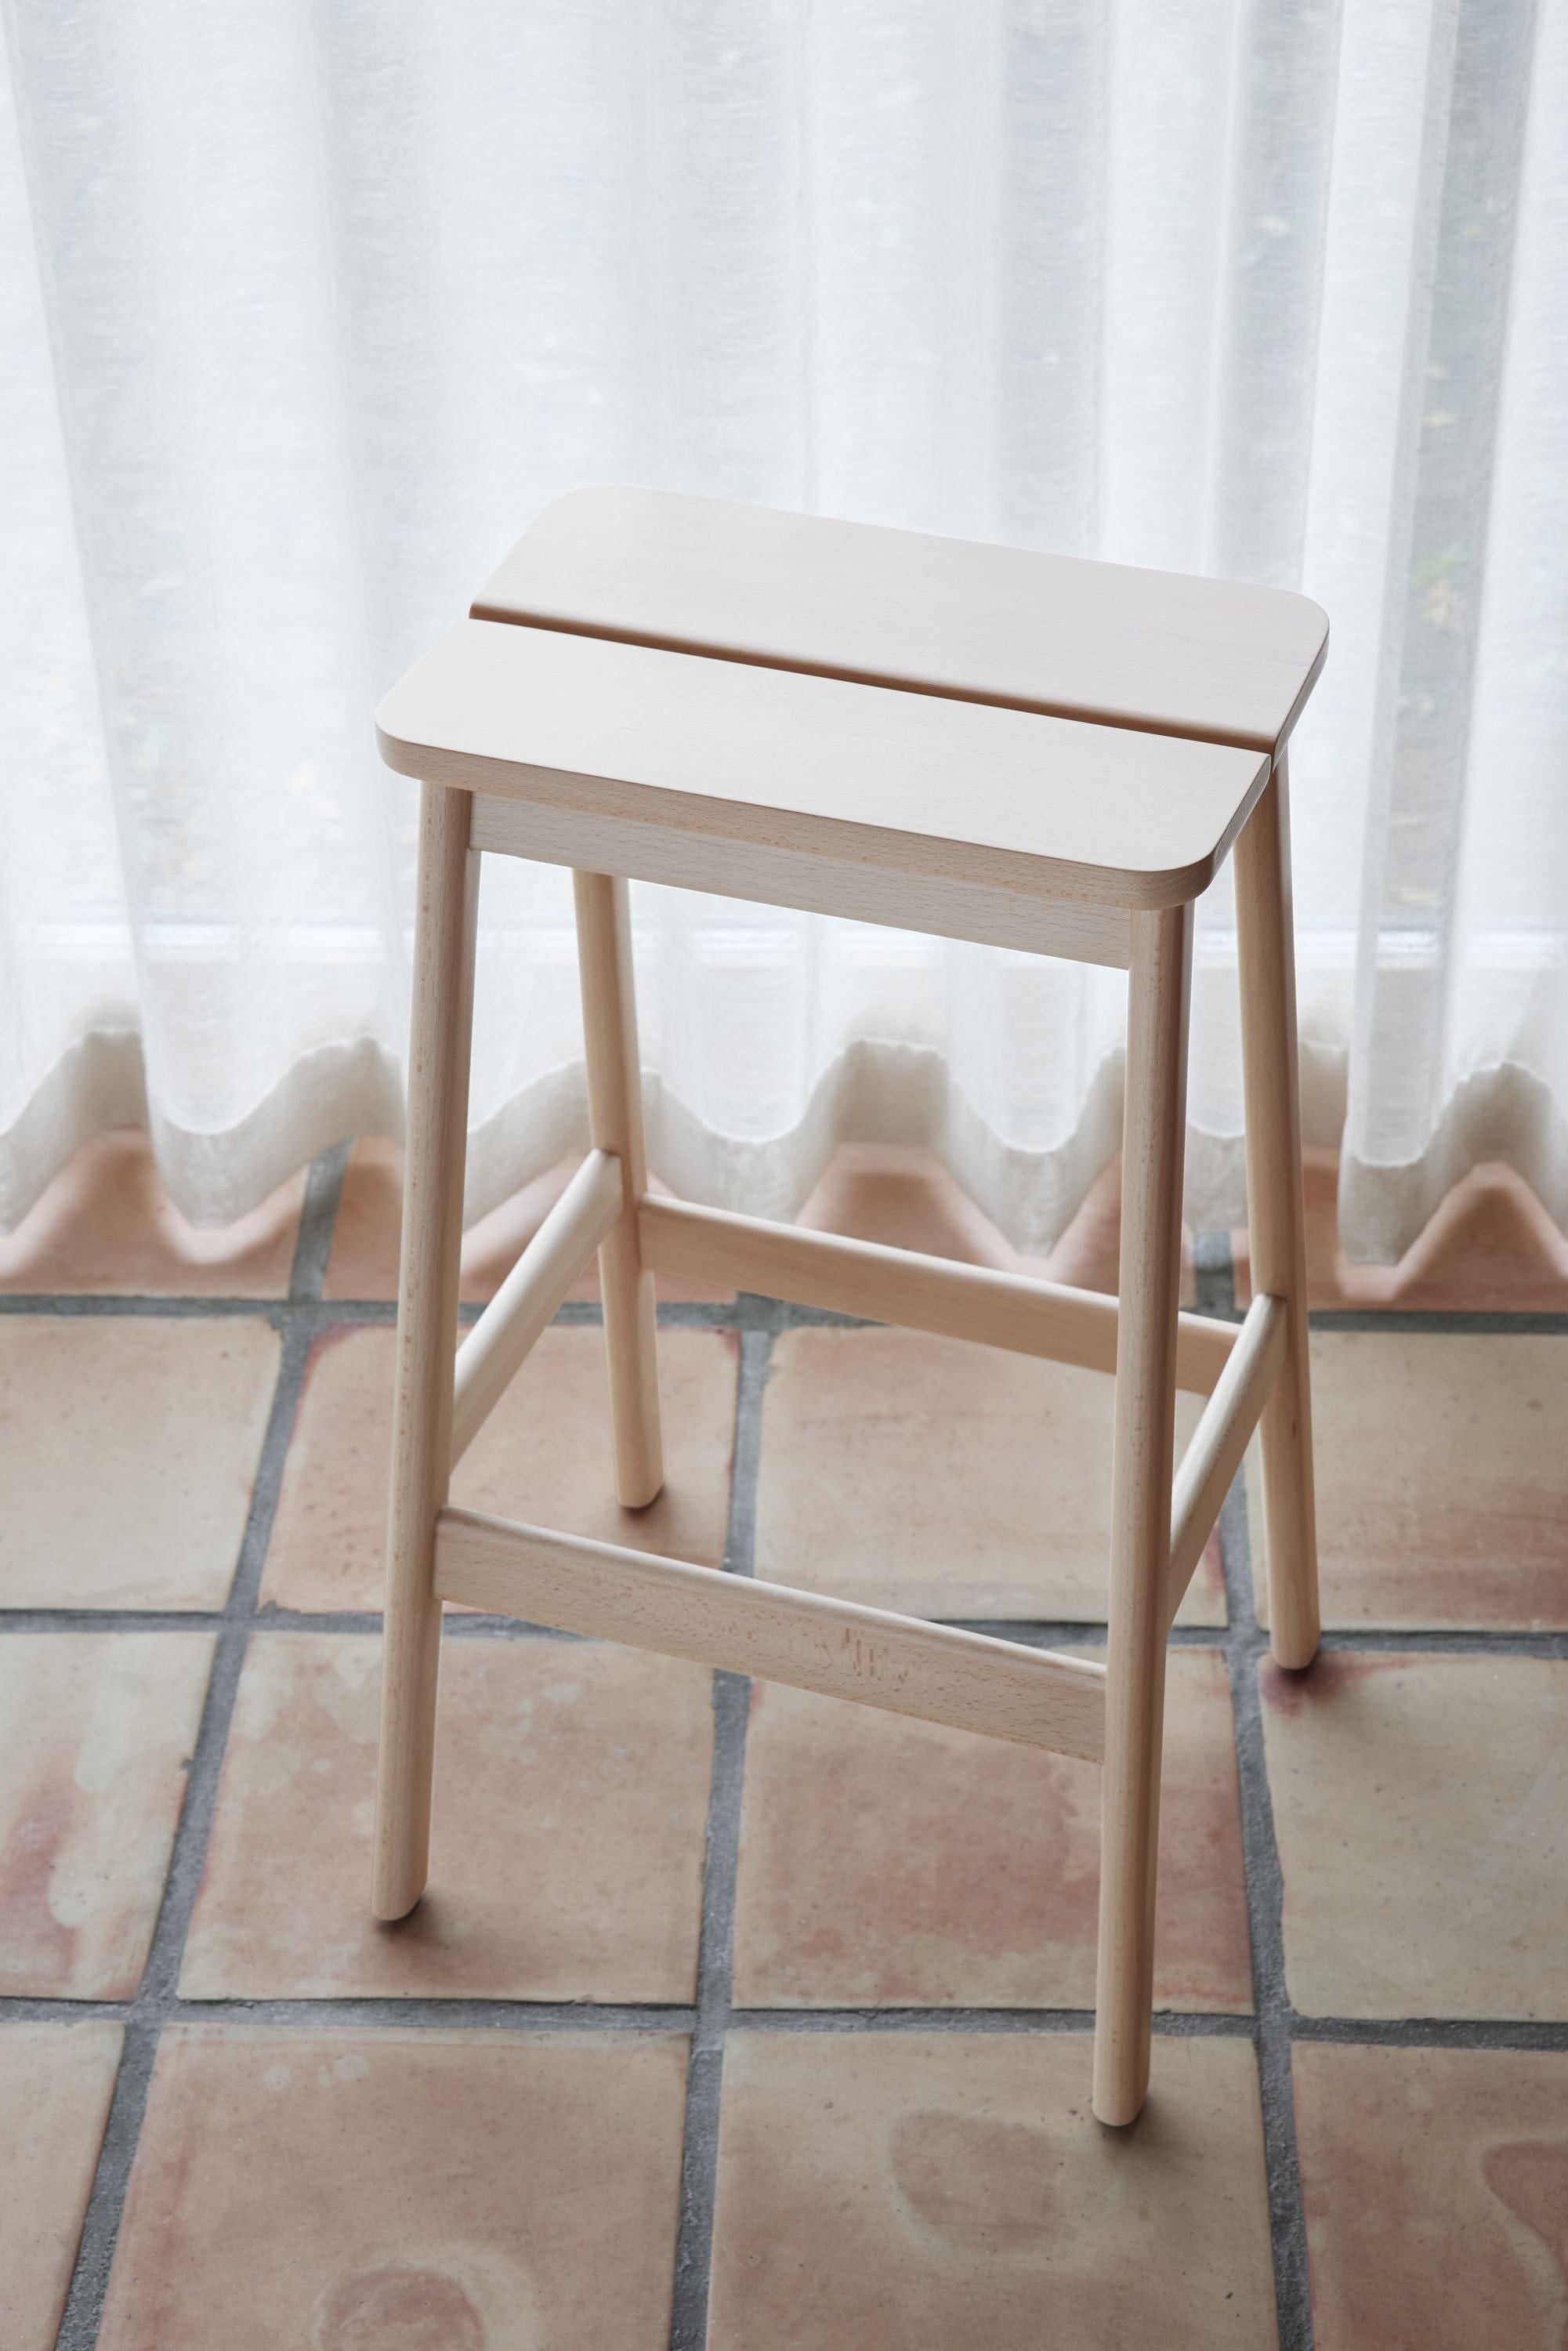 Form & Refine Kąt standardowy stołek barowy 75 cm. Czarny buk